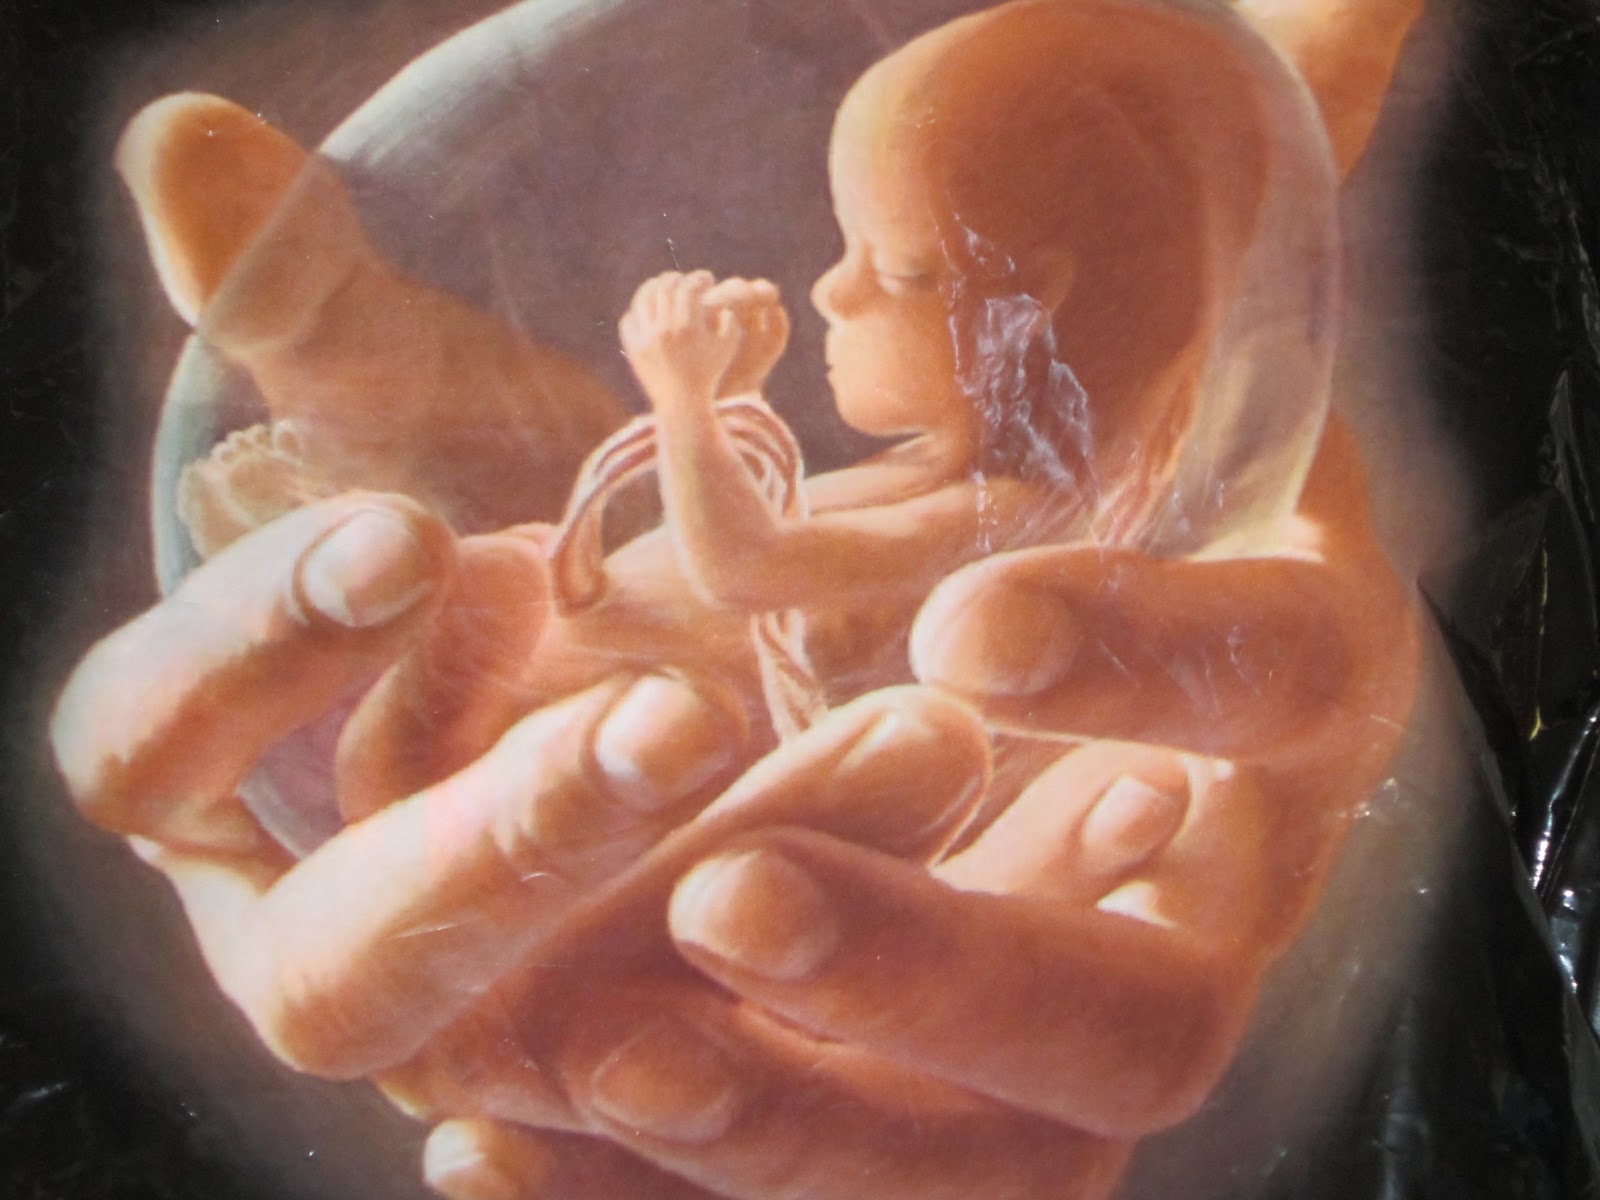 Una partita pro-life contro la politica dell’aborto negli Usa 1